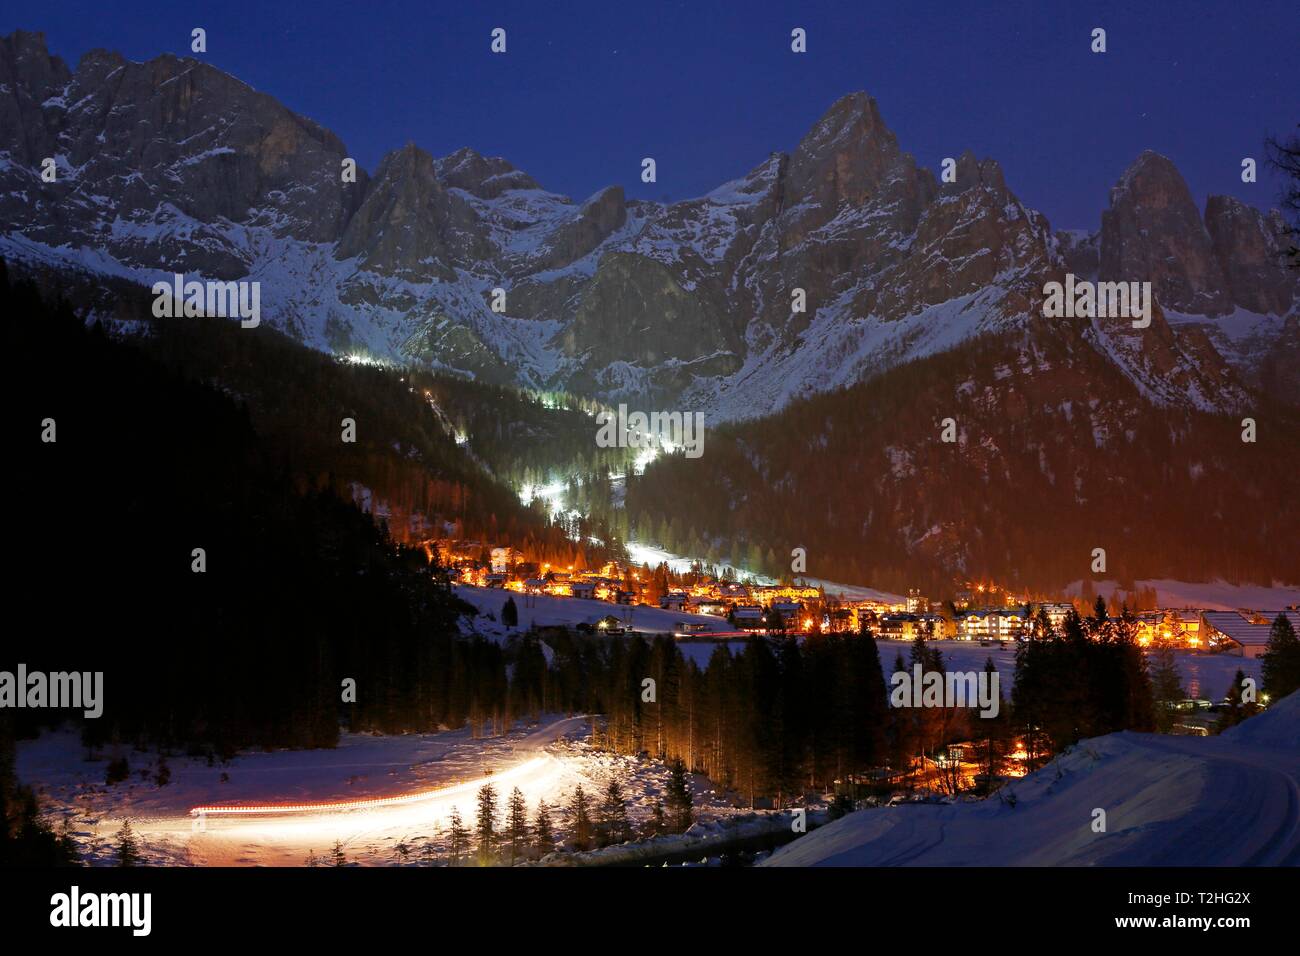 San Martino di Castrozza davanti a una coperta di neve sfondo di montagne in inverno, night shot, Trentino, Italia Foto Stock